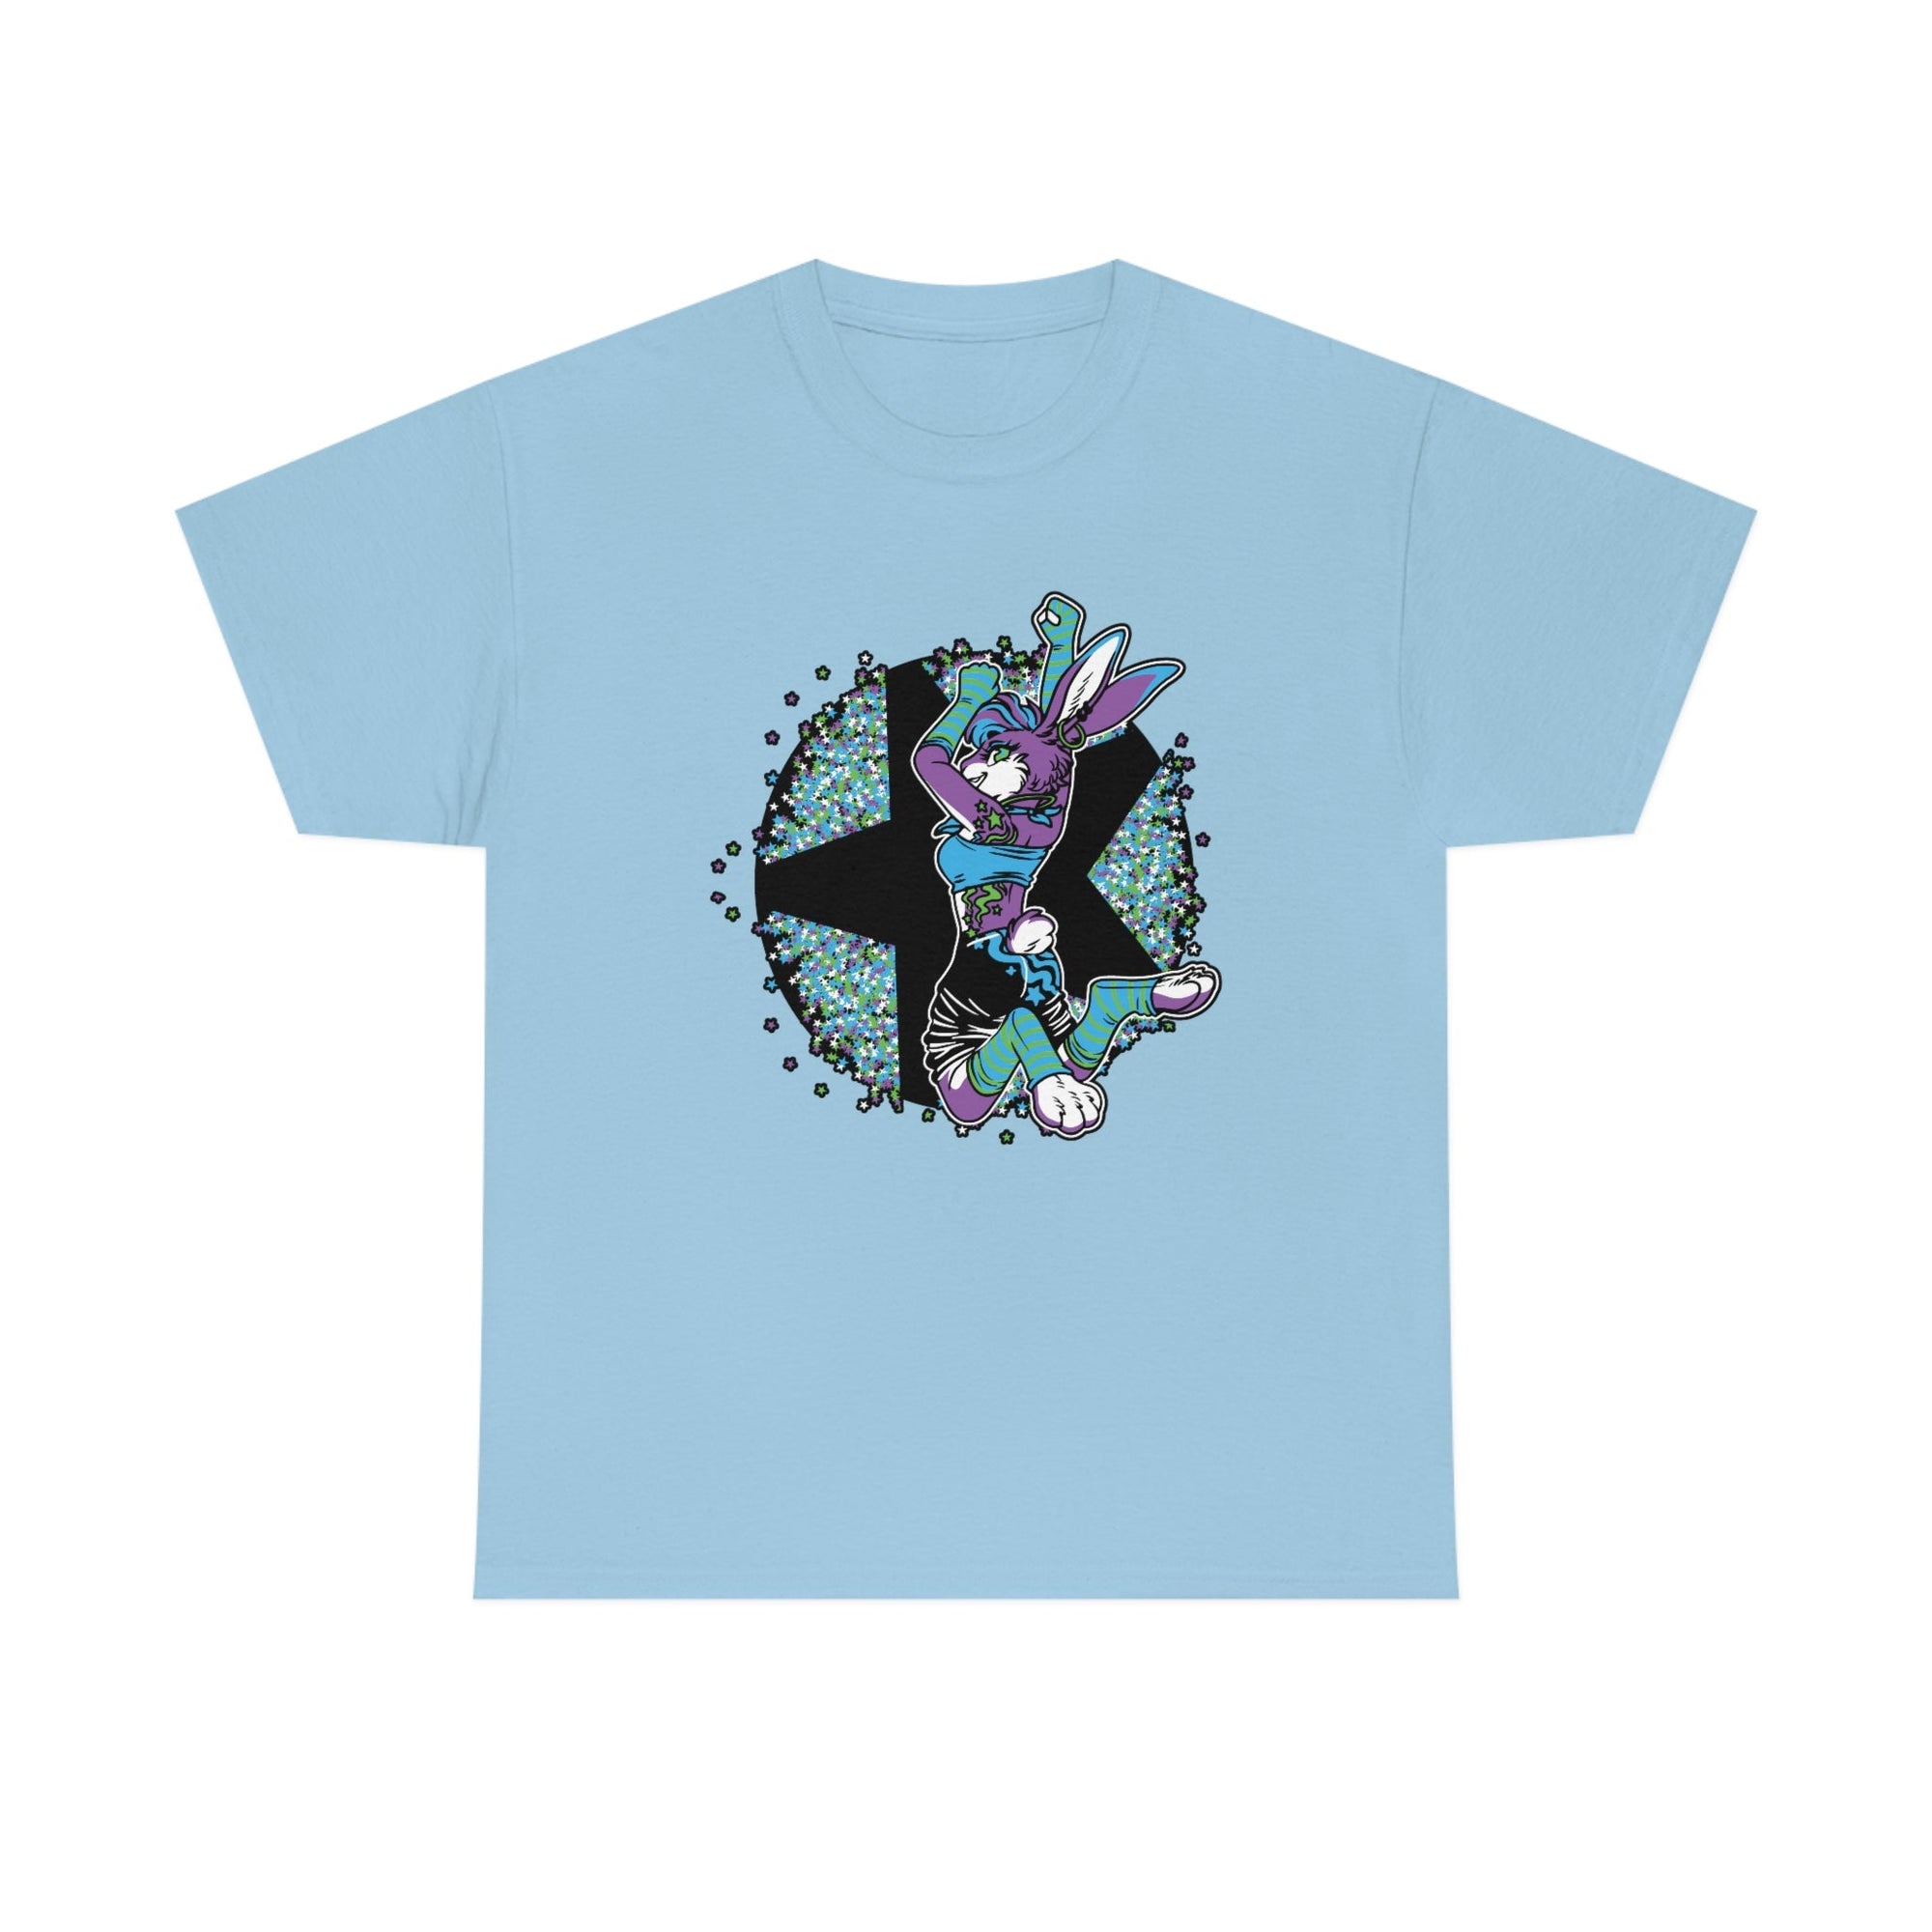 Rave Rabbit - T-Shirt T-Shirt Artworktee Light Blue S 